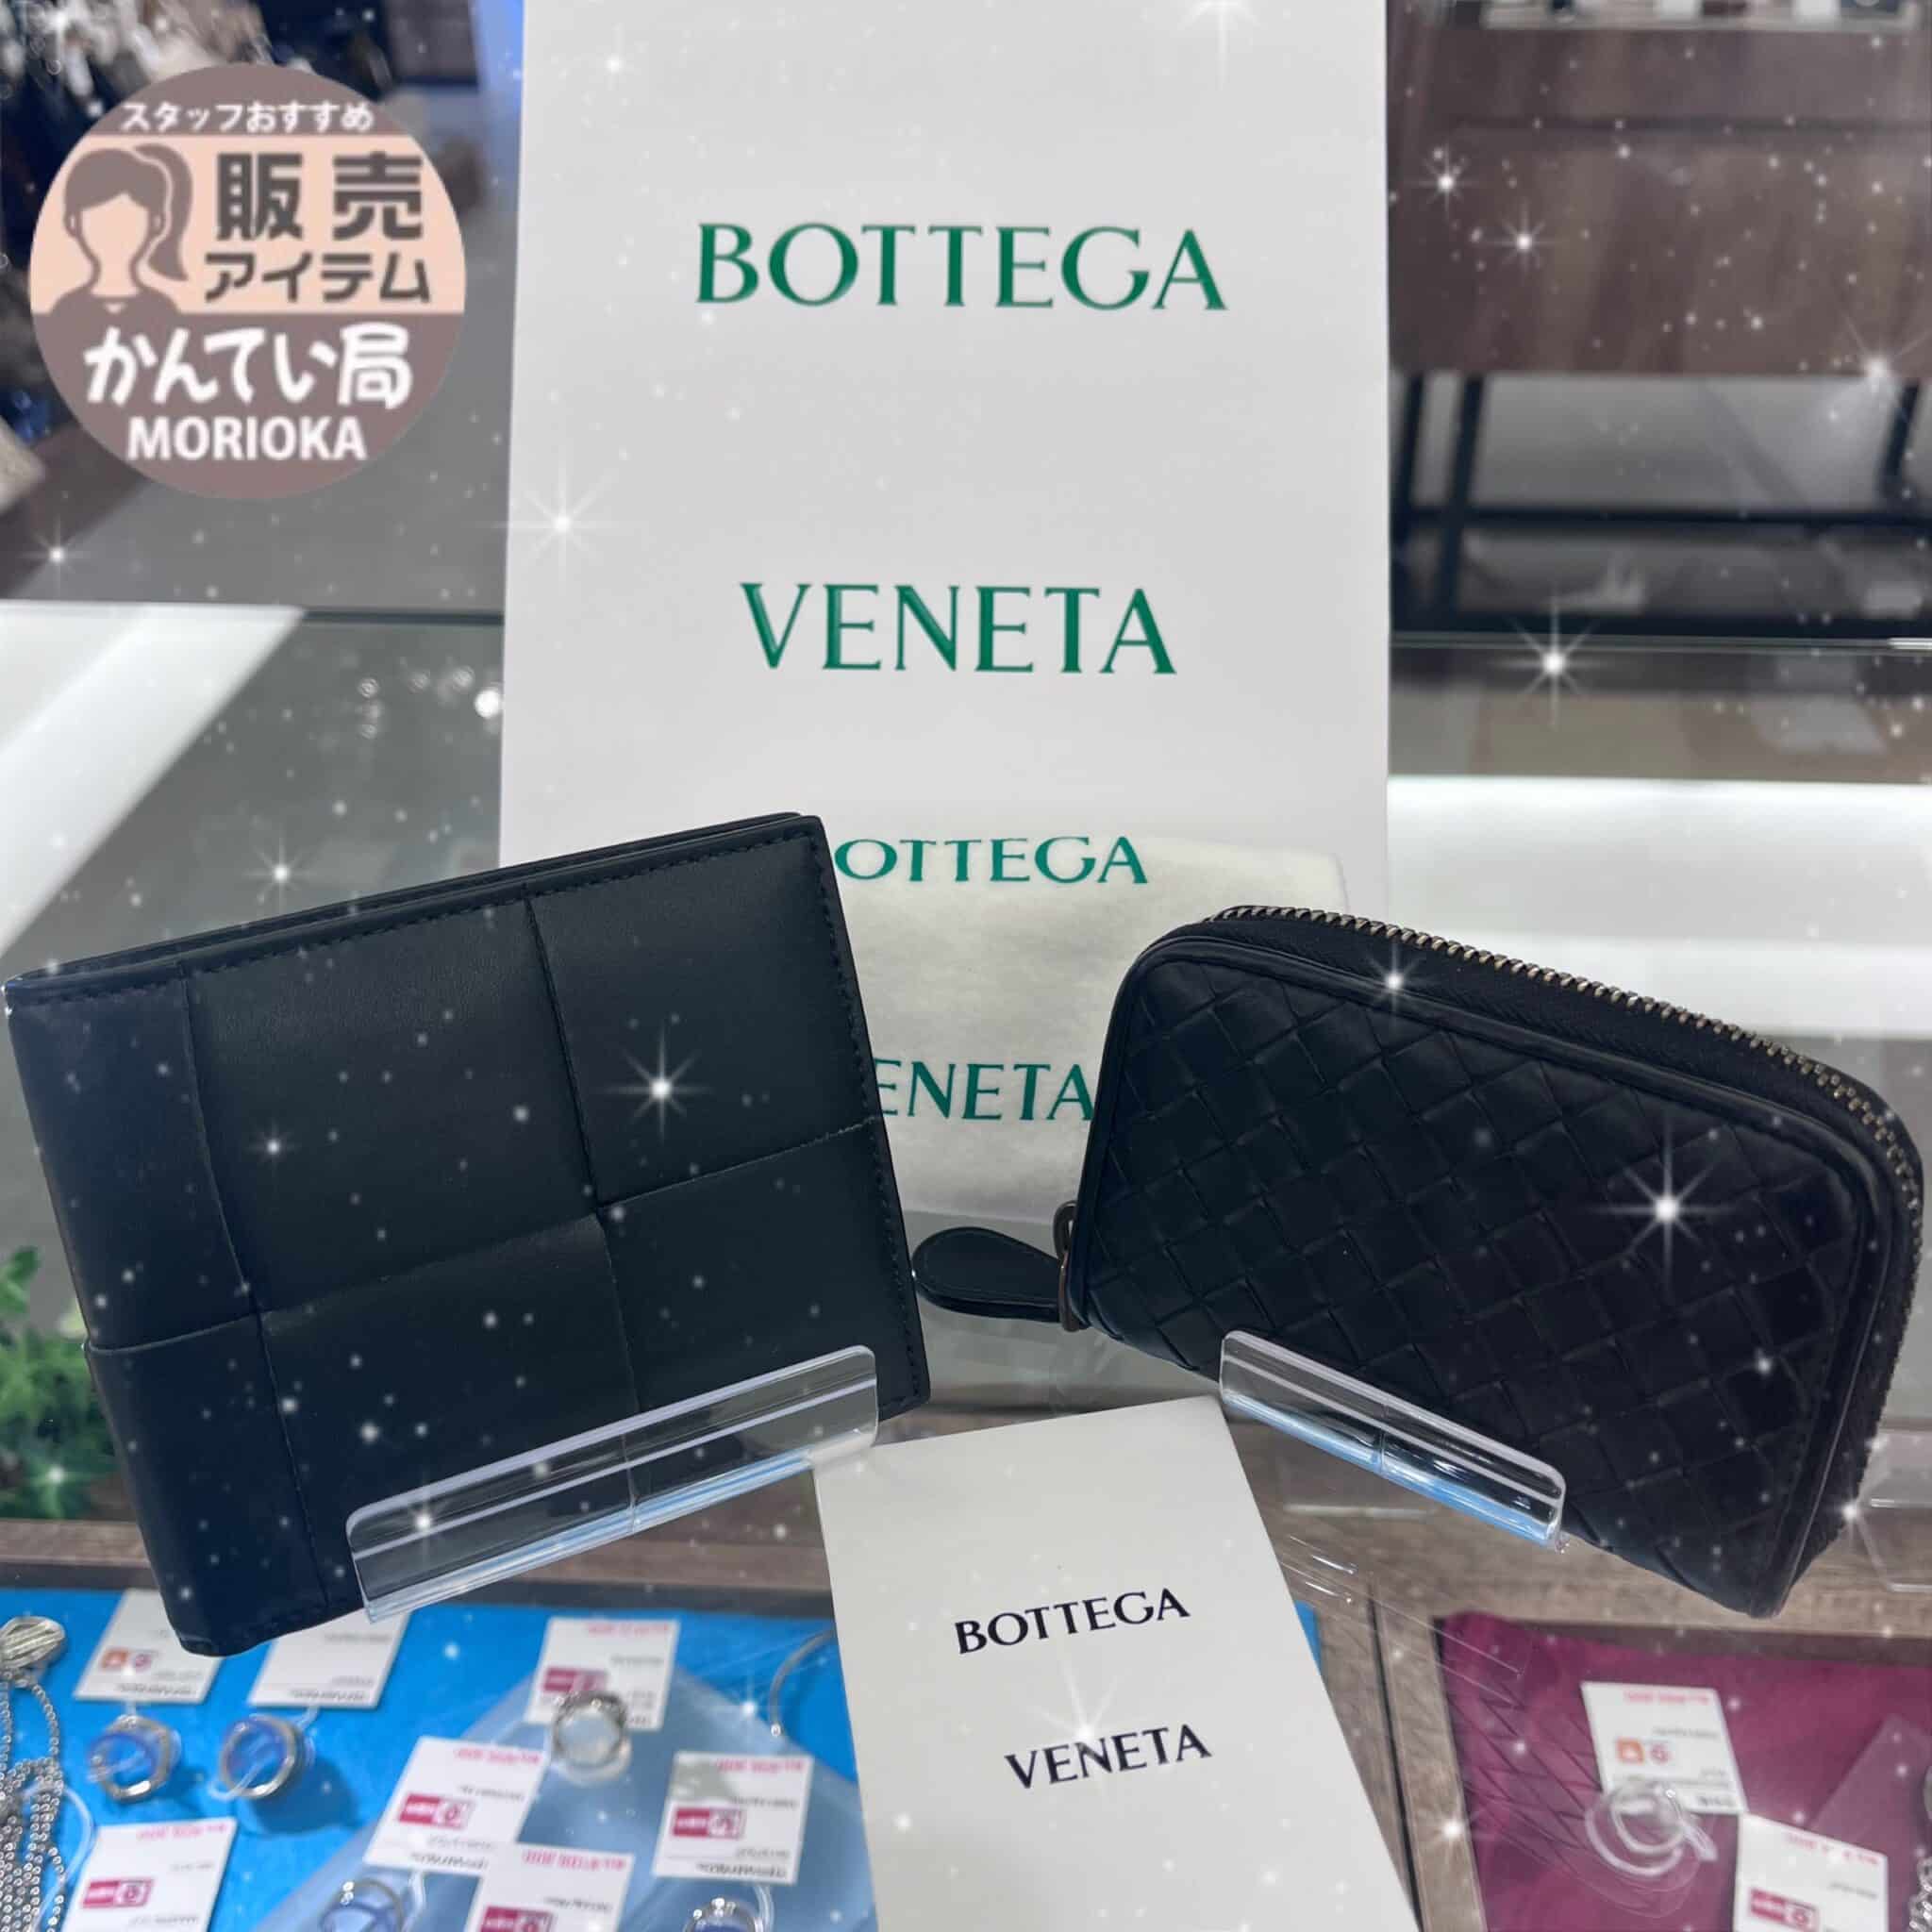 【BOTTEGA VENET　販売】ボッテガ・ヴェネタのコンパクトサイズのウォレットはいかがですか？お探しの方は是非かんてい局盛岡店へGO😊🖐